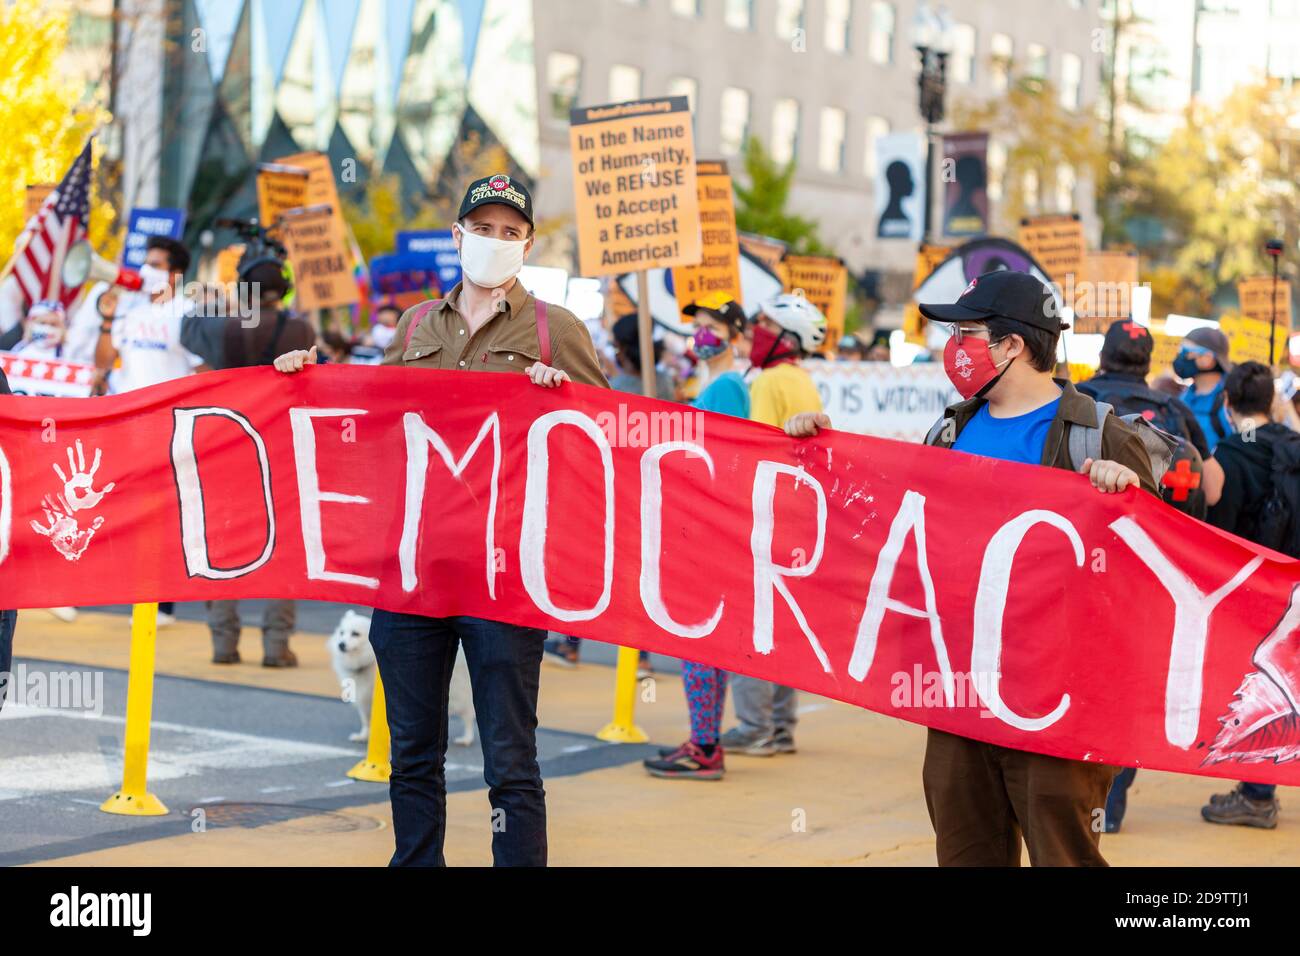 Washington DC, USA 11/06/2020: Eine Gruppe demokratischer Sozialisten mit Rosenhandshake-Masken marschiert nahe dem Weißen Haus, um die Niederlage zu feiern Stockfoto